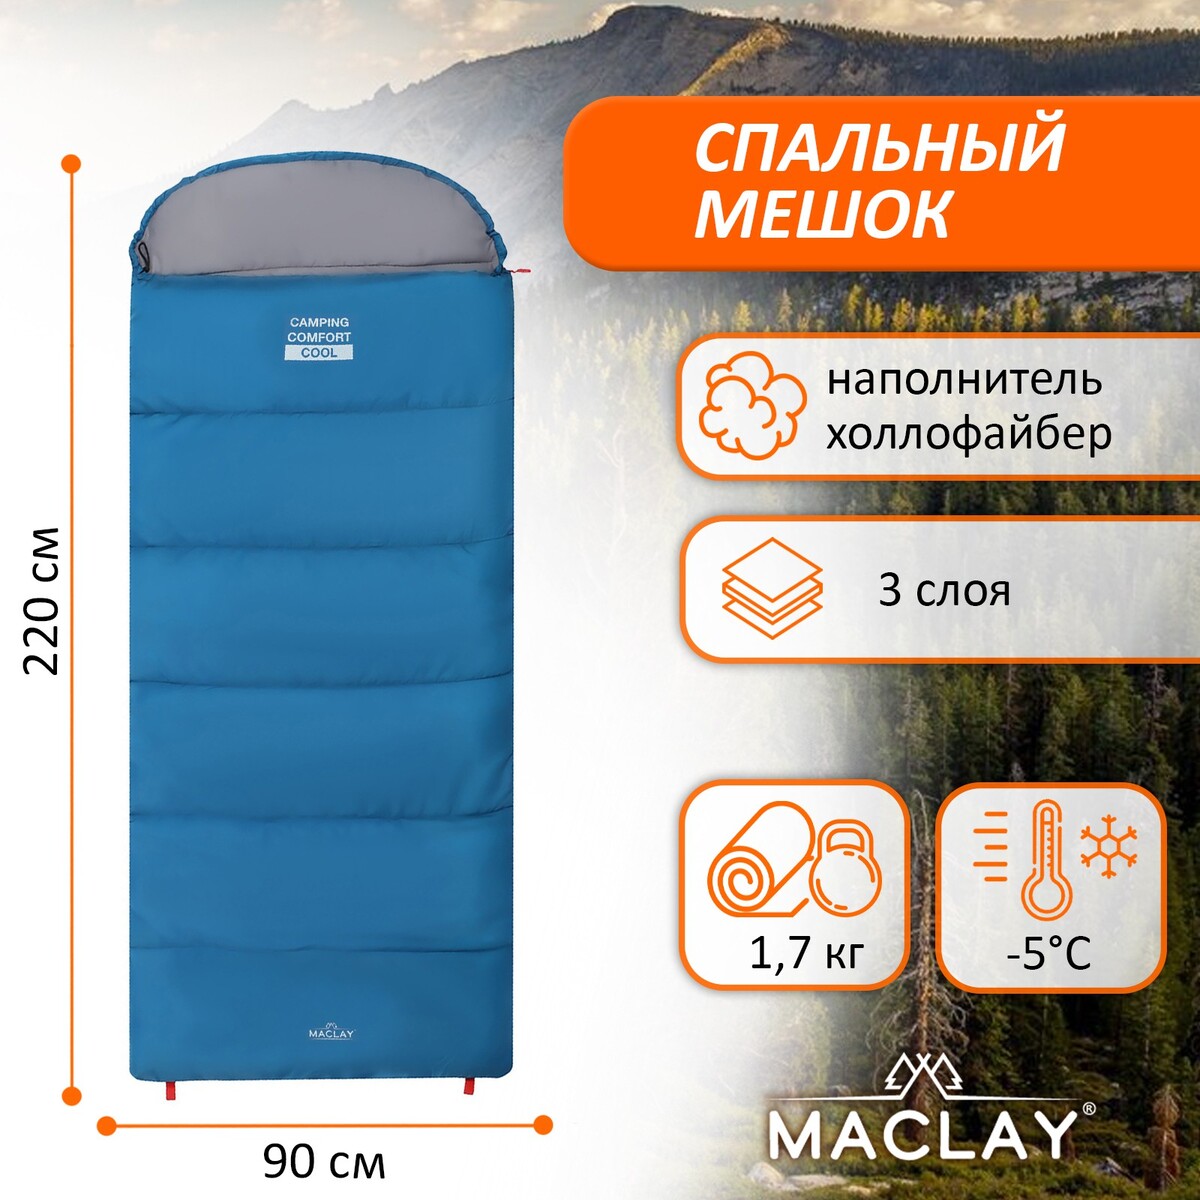 Спальный мешок maclay camping comfort cool, 3-слойный, левый, 220х90 см, -5/+10°с спальник одеяло maclay camping comfort cold 4 слойный левый 220х90 см 10 5°с